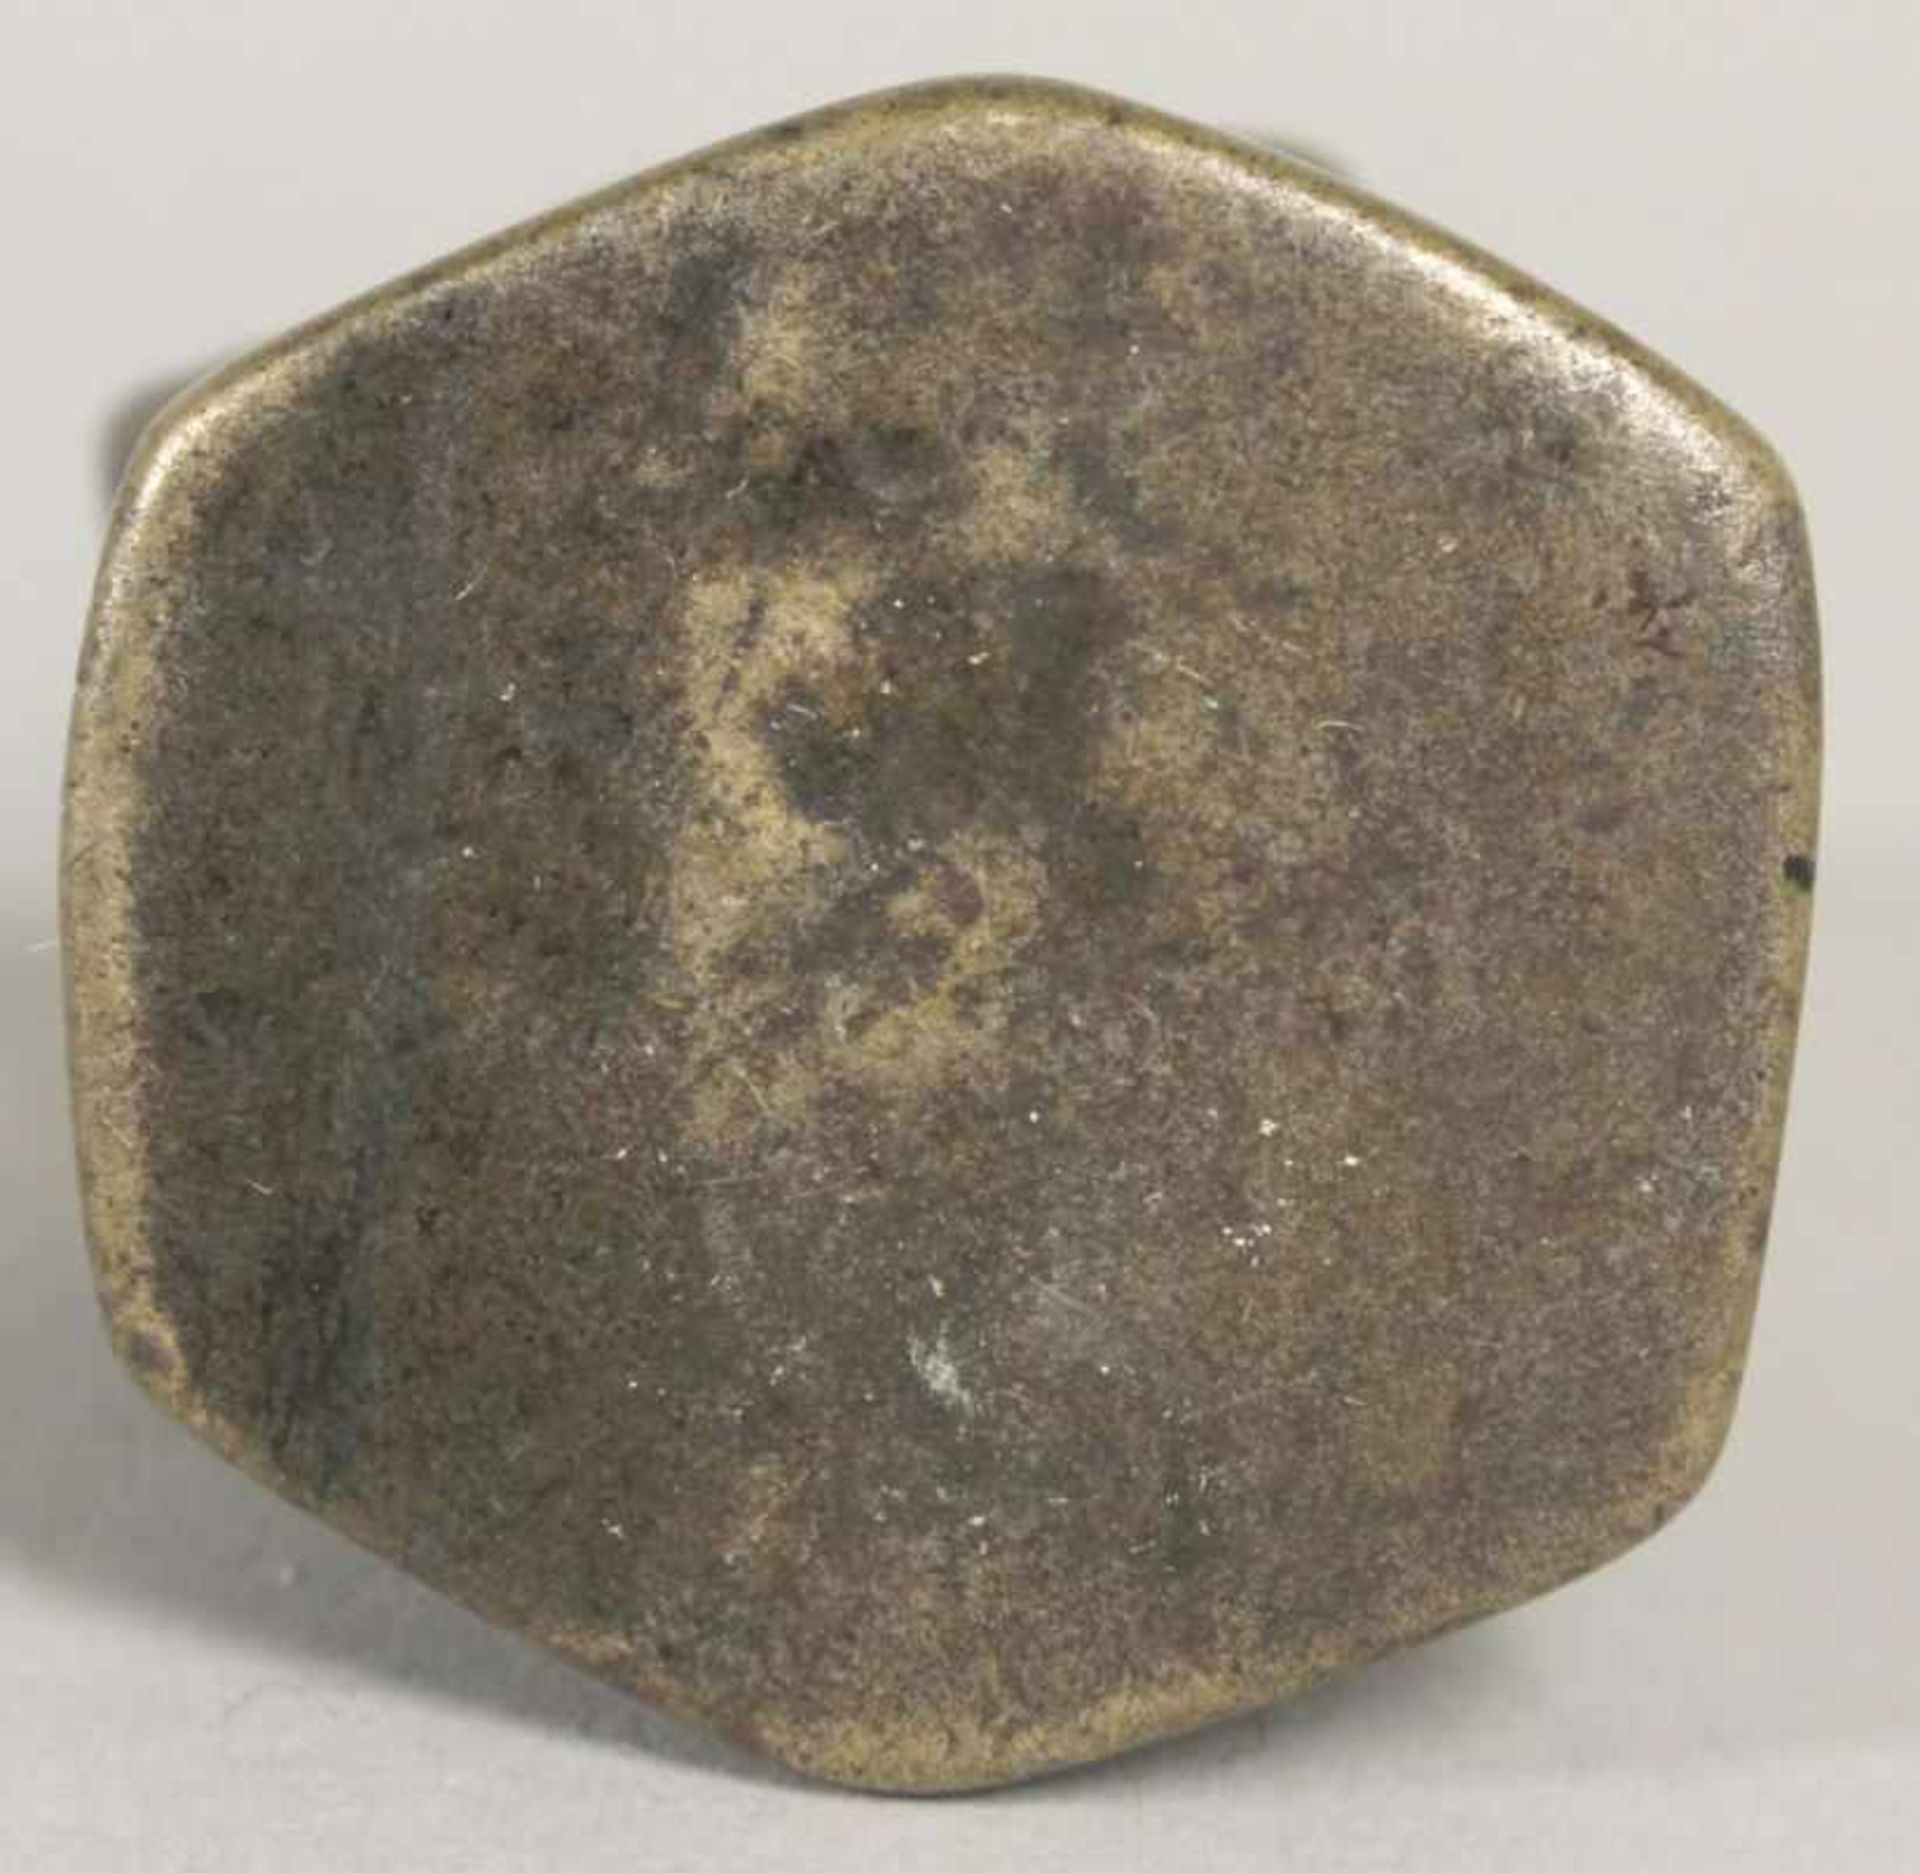 Bronze-Opiumgewicht, Burma, 19. Jh., gearbeitet in Form von Ente auf Sockel, dunkleAlterspatina, H 5 - Bild 2 aus 2